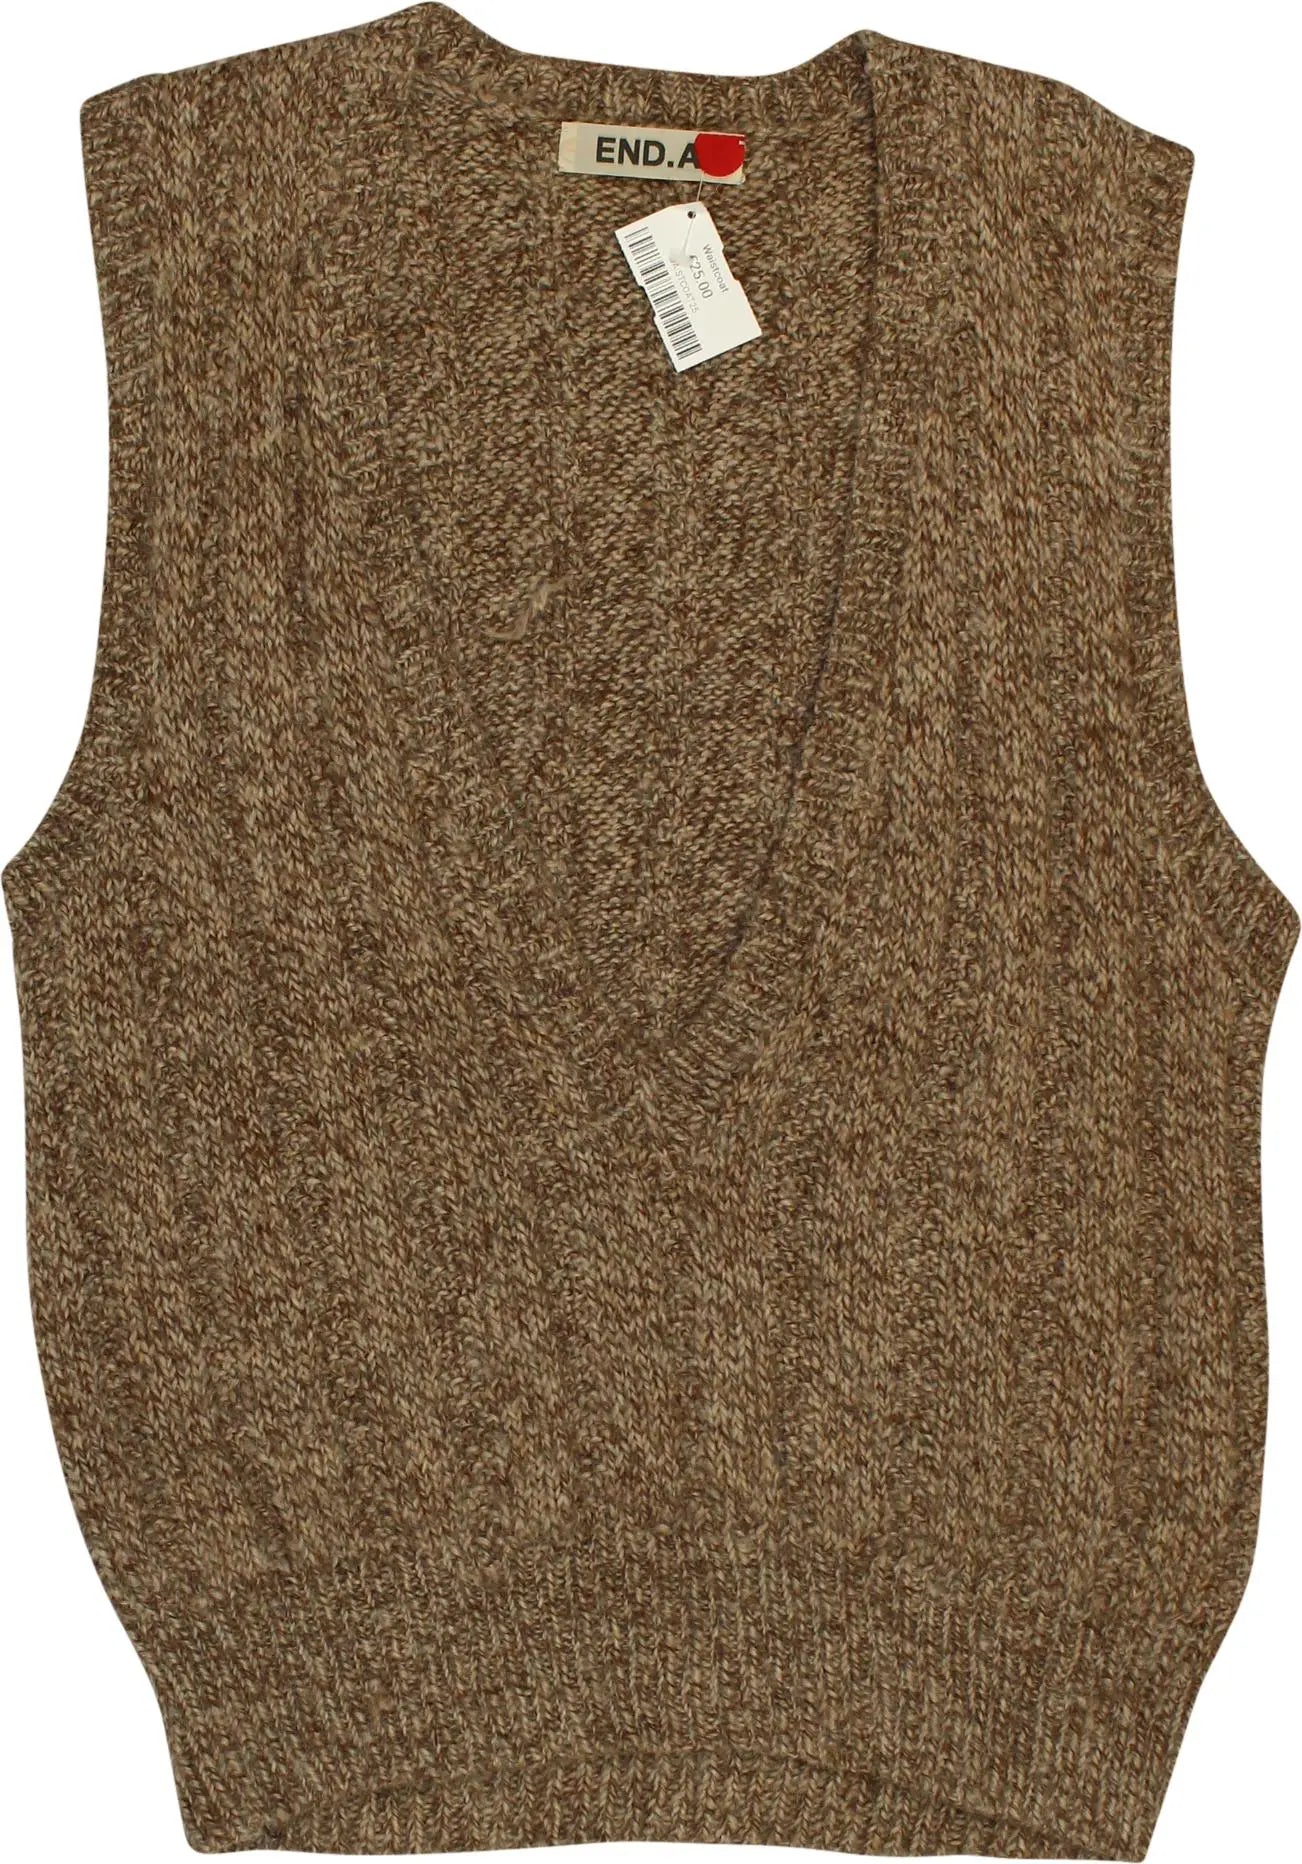 Women's Vintage Sweater Vests